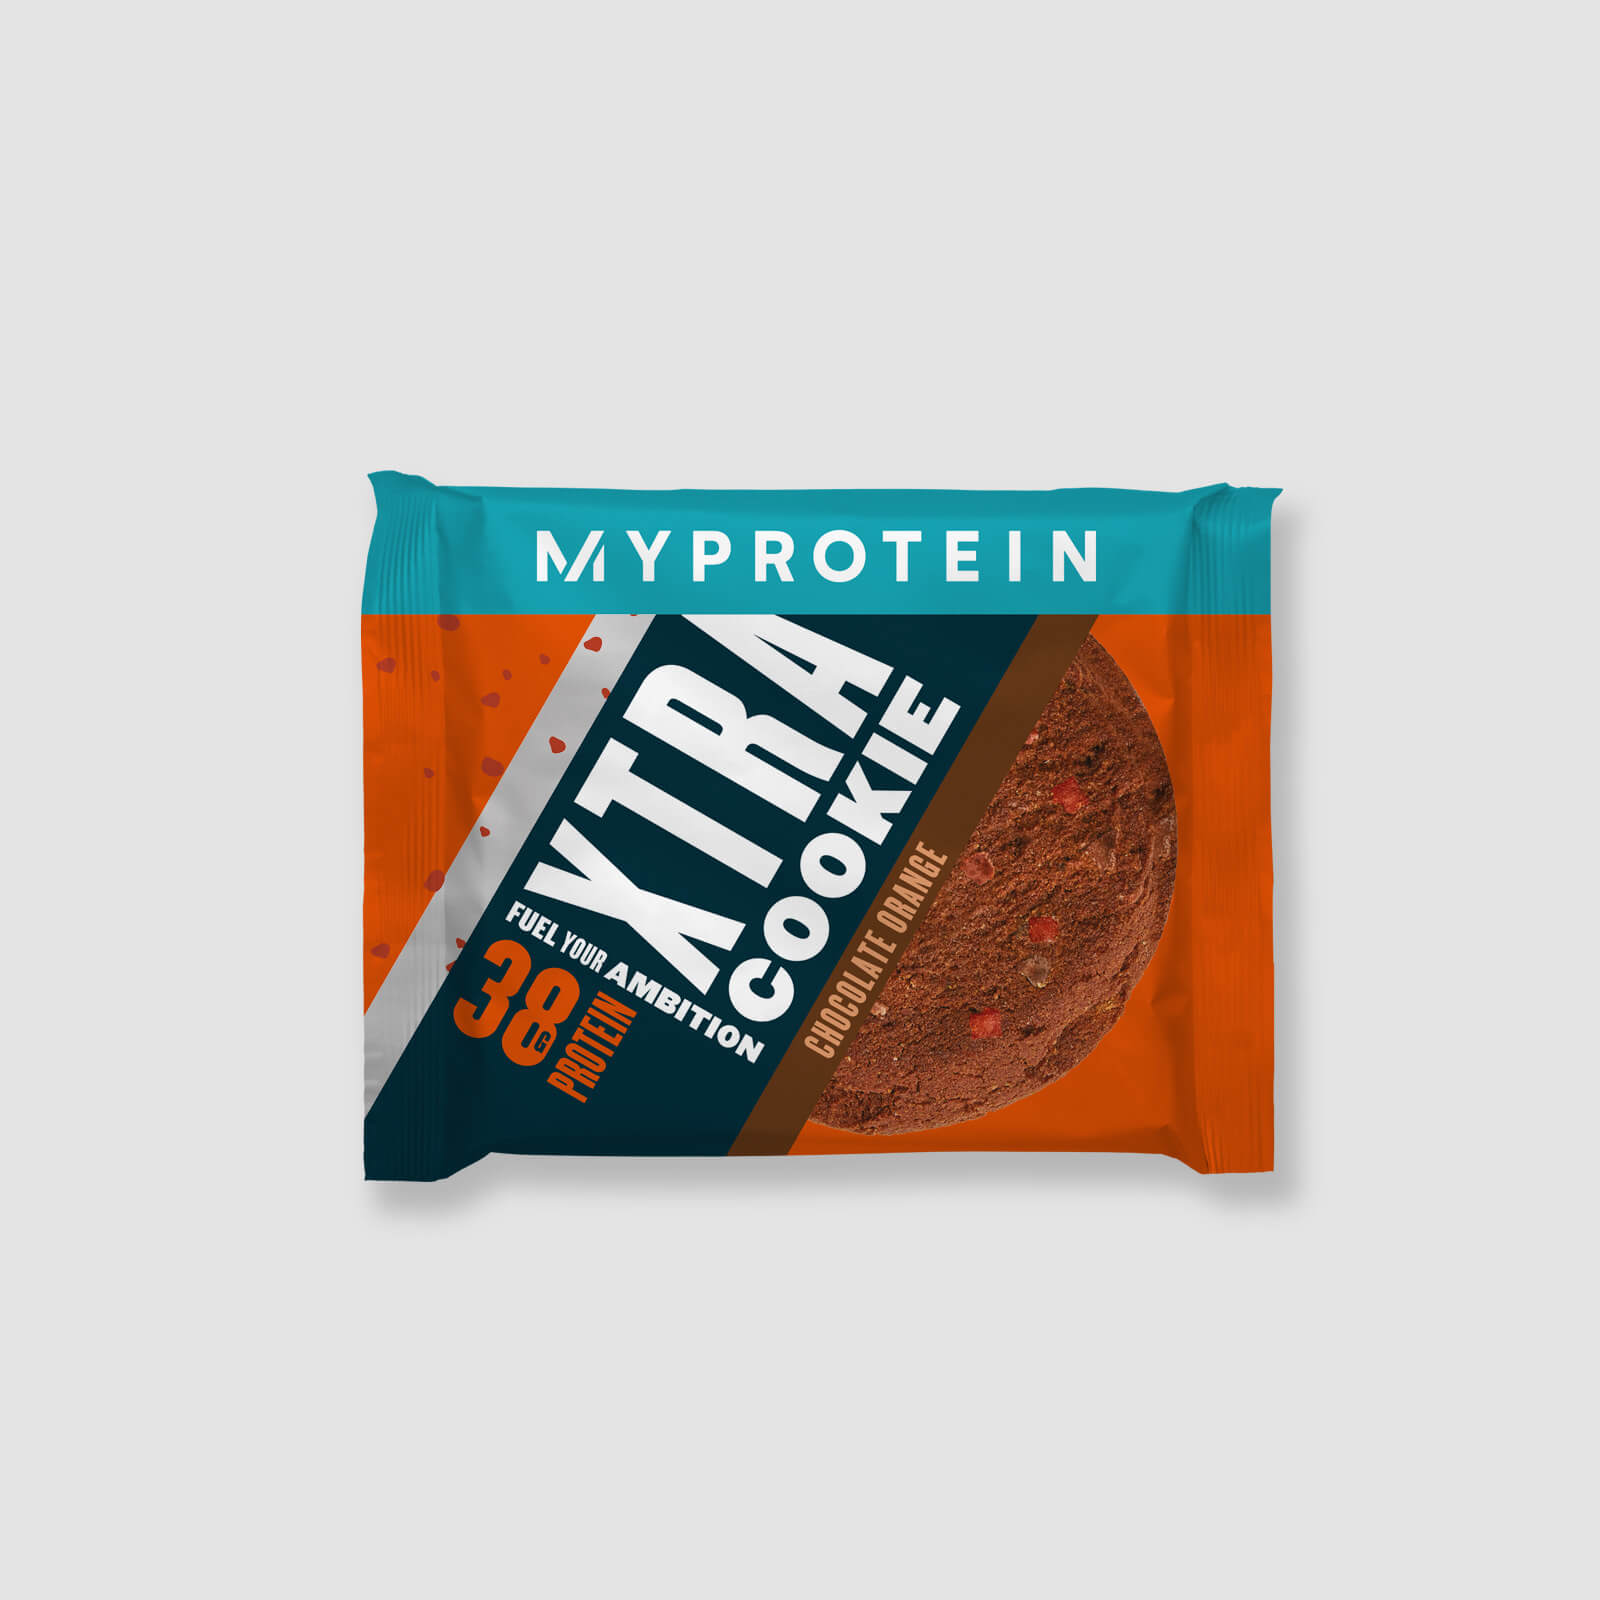 Myprotein Protein Cookie (Sample) - Chocolate Orange